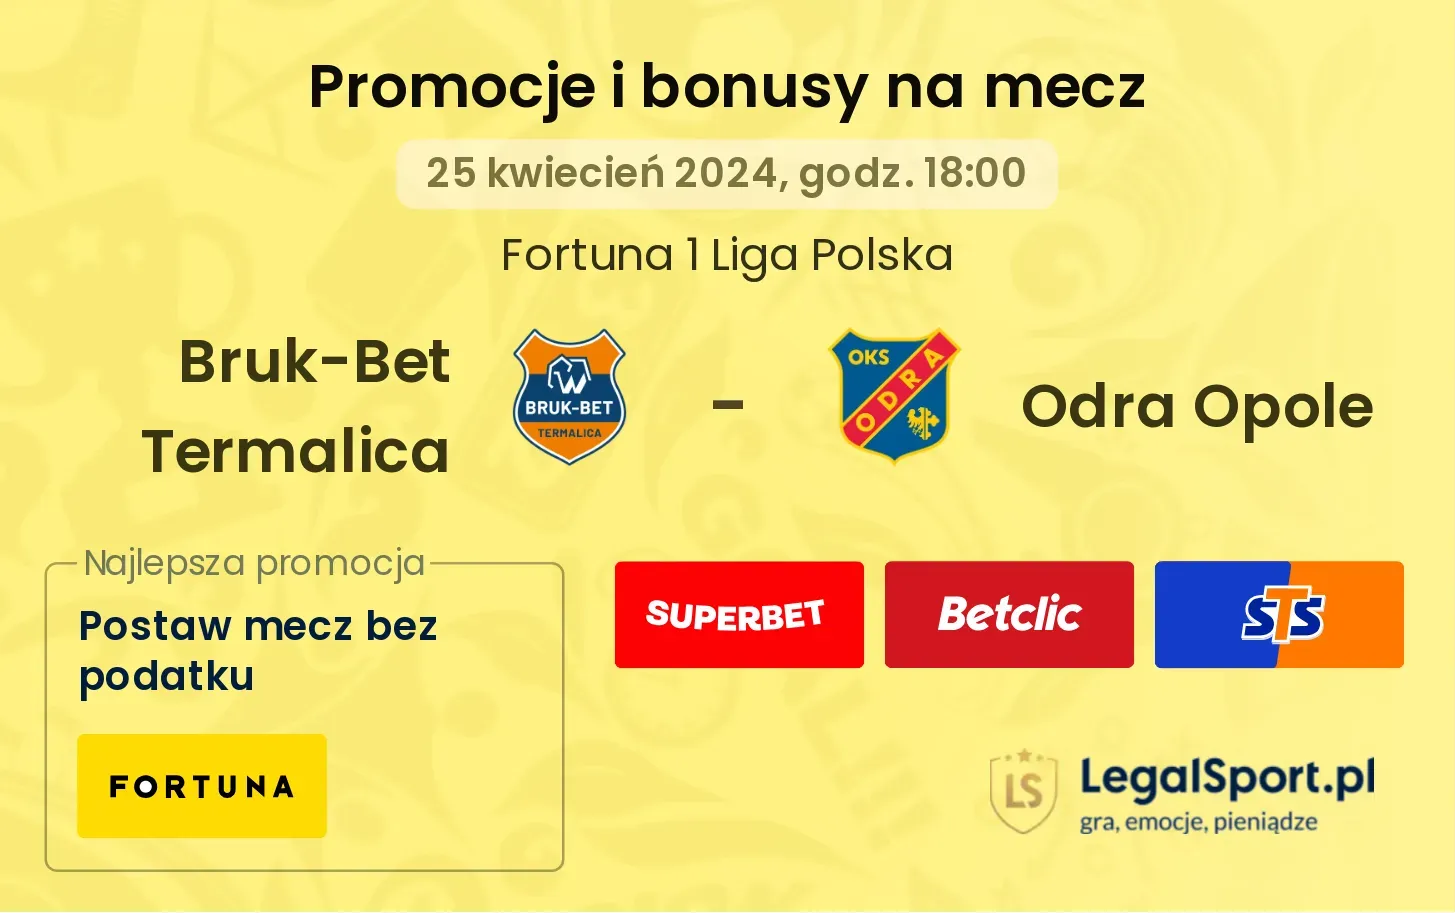 Bruk-Bet Termalica - Odra Opole promocje bonusy na mecz